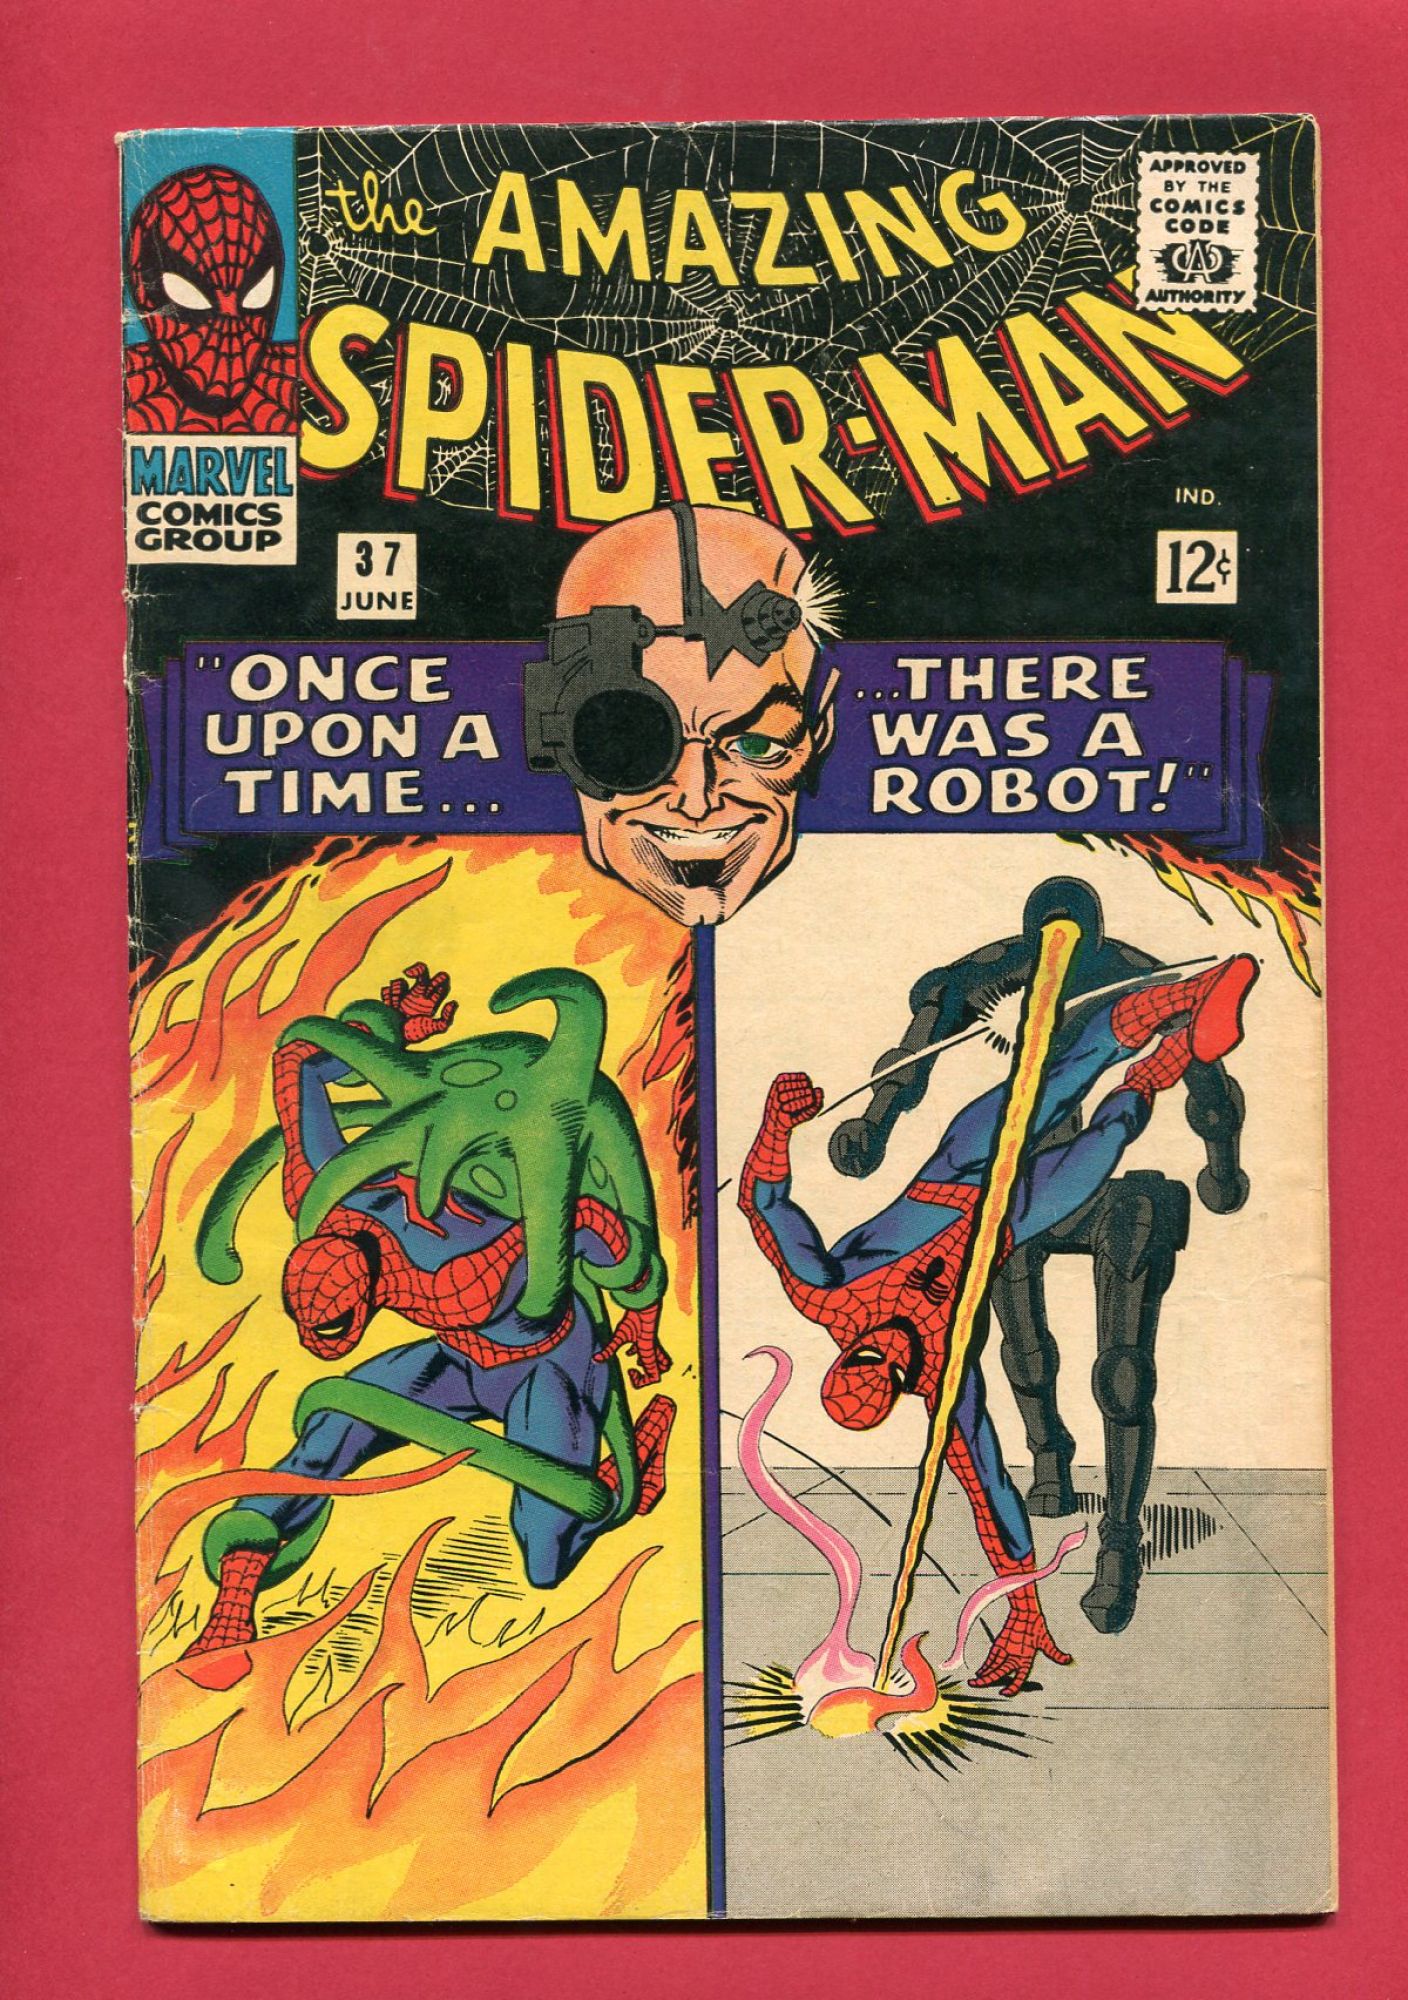 Amazing Spider-Man #37, Jun 1966, 4.0 VG